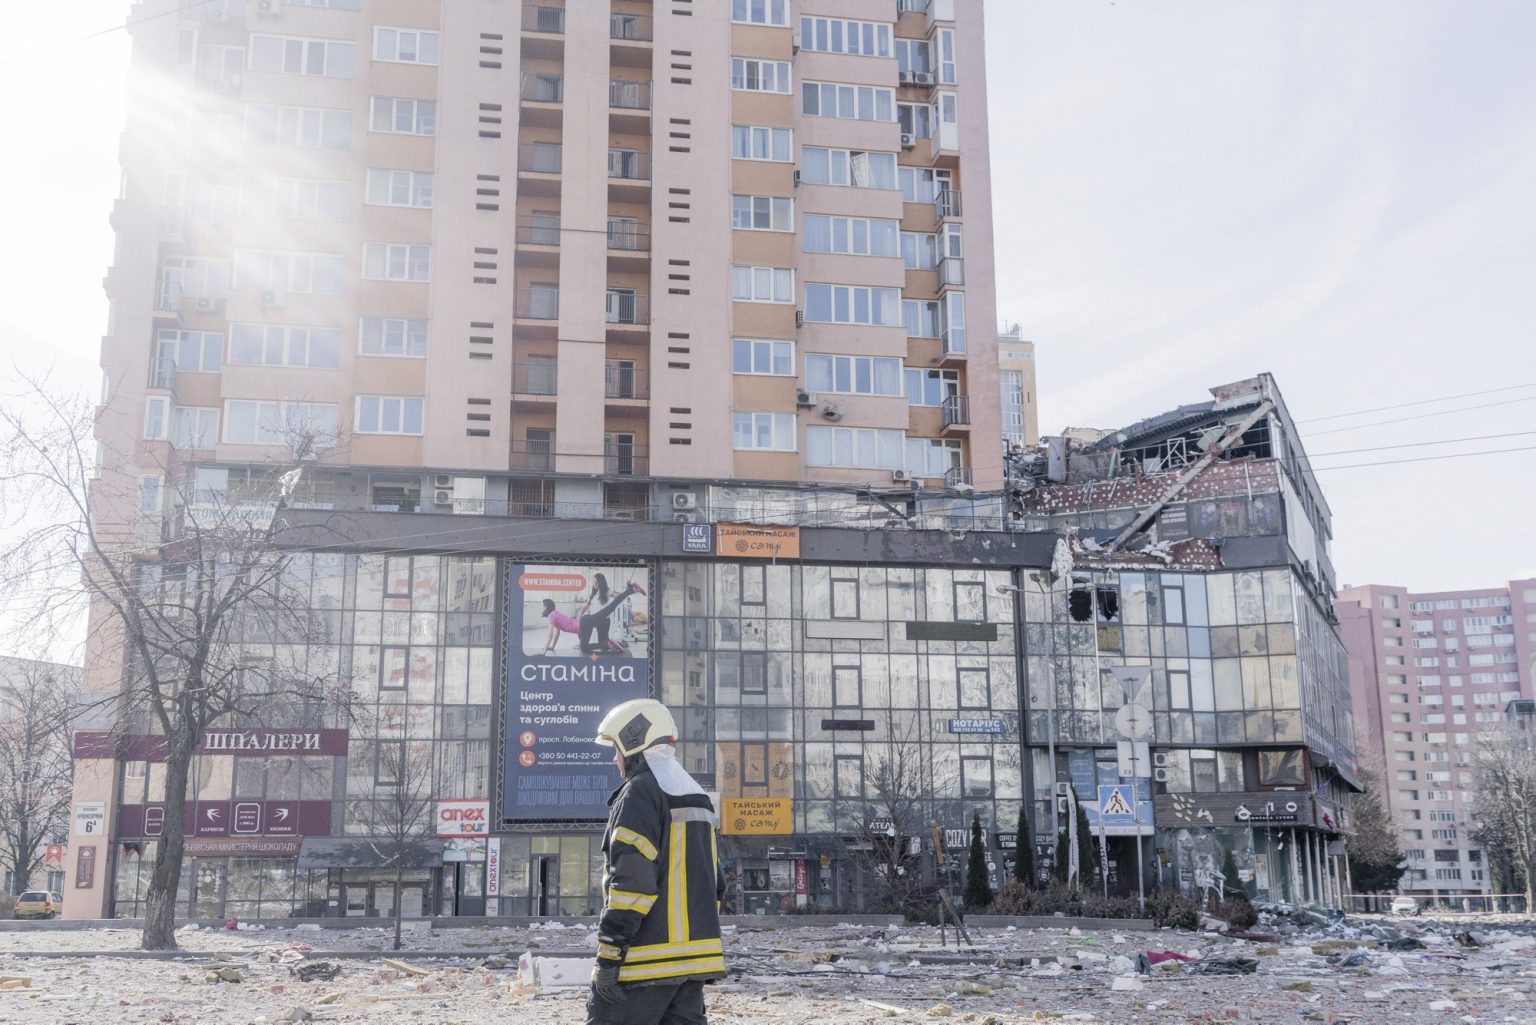 01563819 UKRAINE, Kyiv. February 26, 2022 - A firefighter walks in front of an apartment building damaged by shelling in Kyiv.                   As Russia invades Ukraine, thousands of Ukrainians are fleeing the country to find shelter in bordering countries. 
---------
Con l'invasione russa ai danni dell'Ucraina, migliaia di ucraini sono in fuga dalla nazione d'origine per cercare rifugio nelle nazioni confinanti.*** SPECIAL   FEE   APPLIES *** *** Local Caption *** 01563819